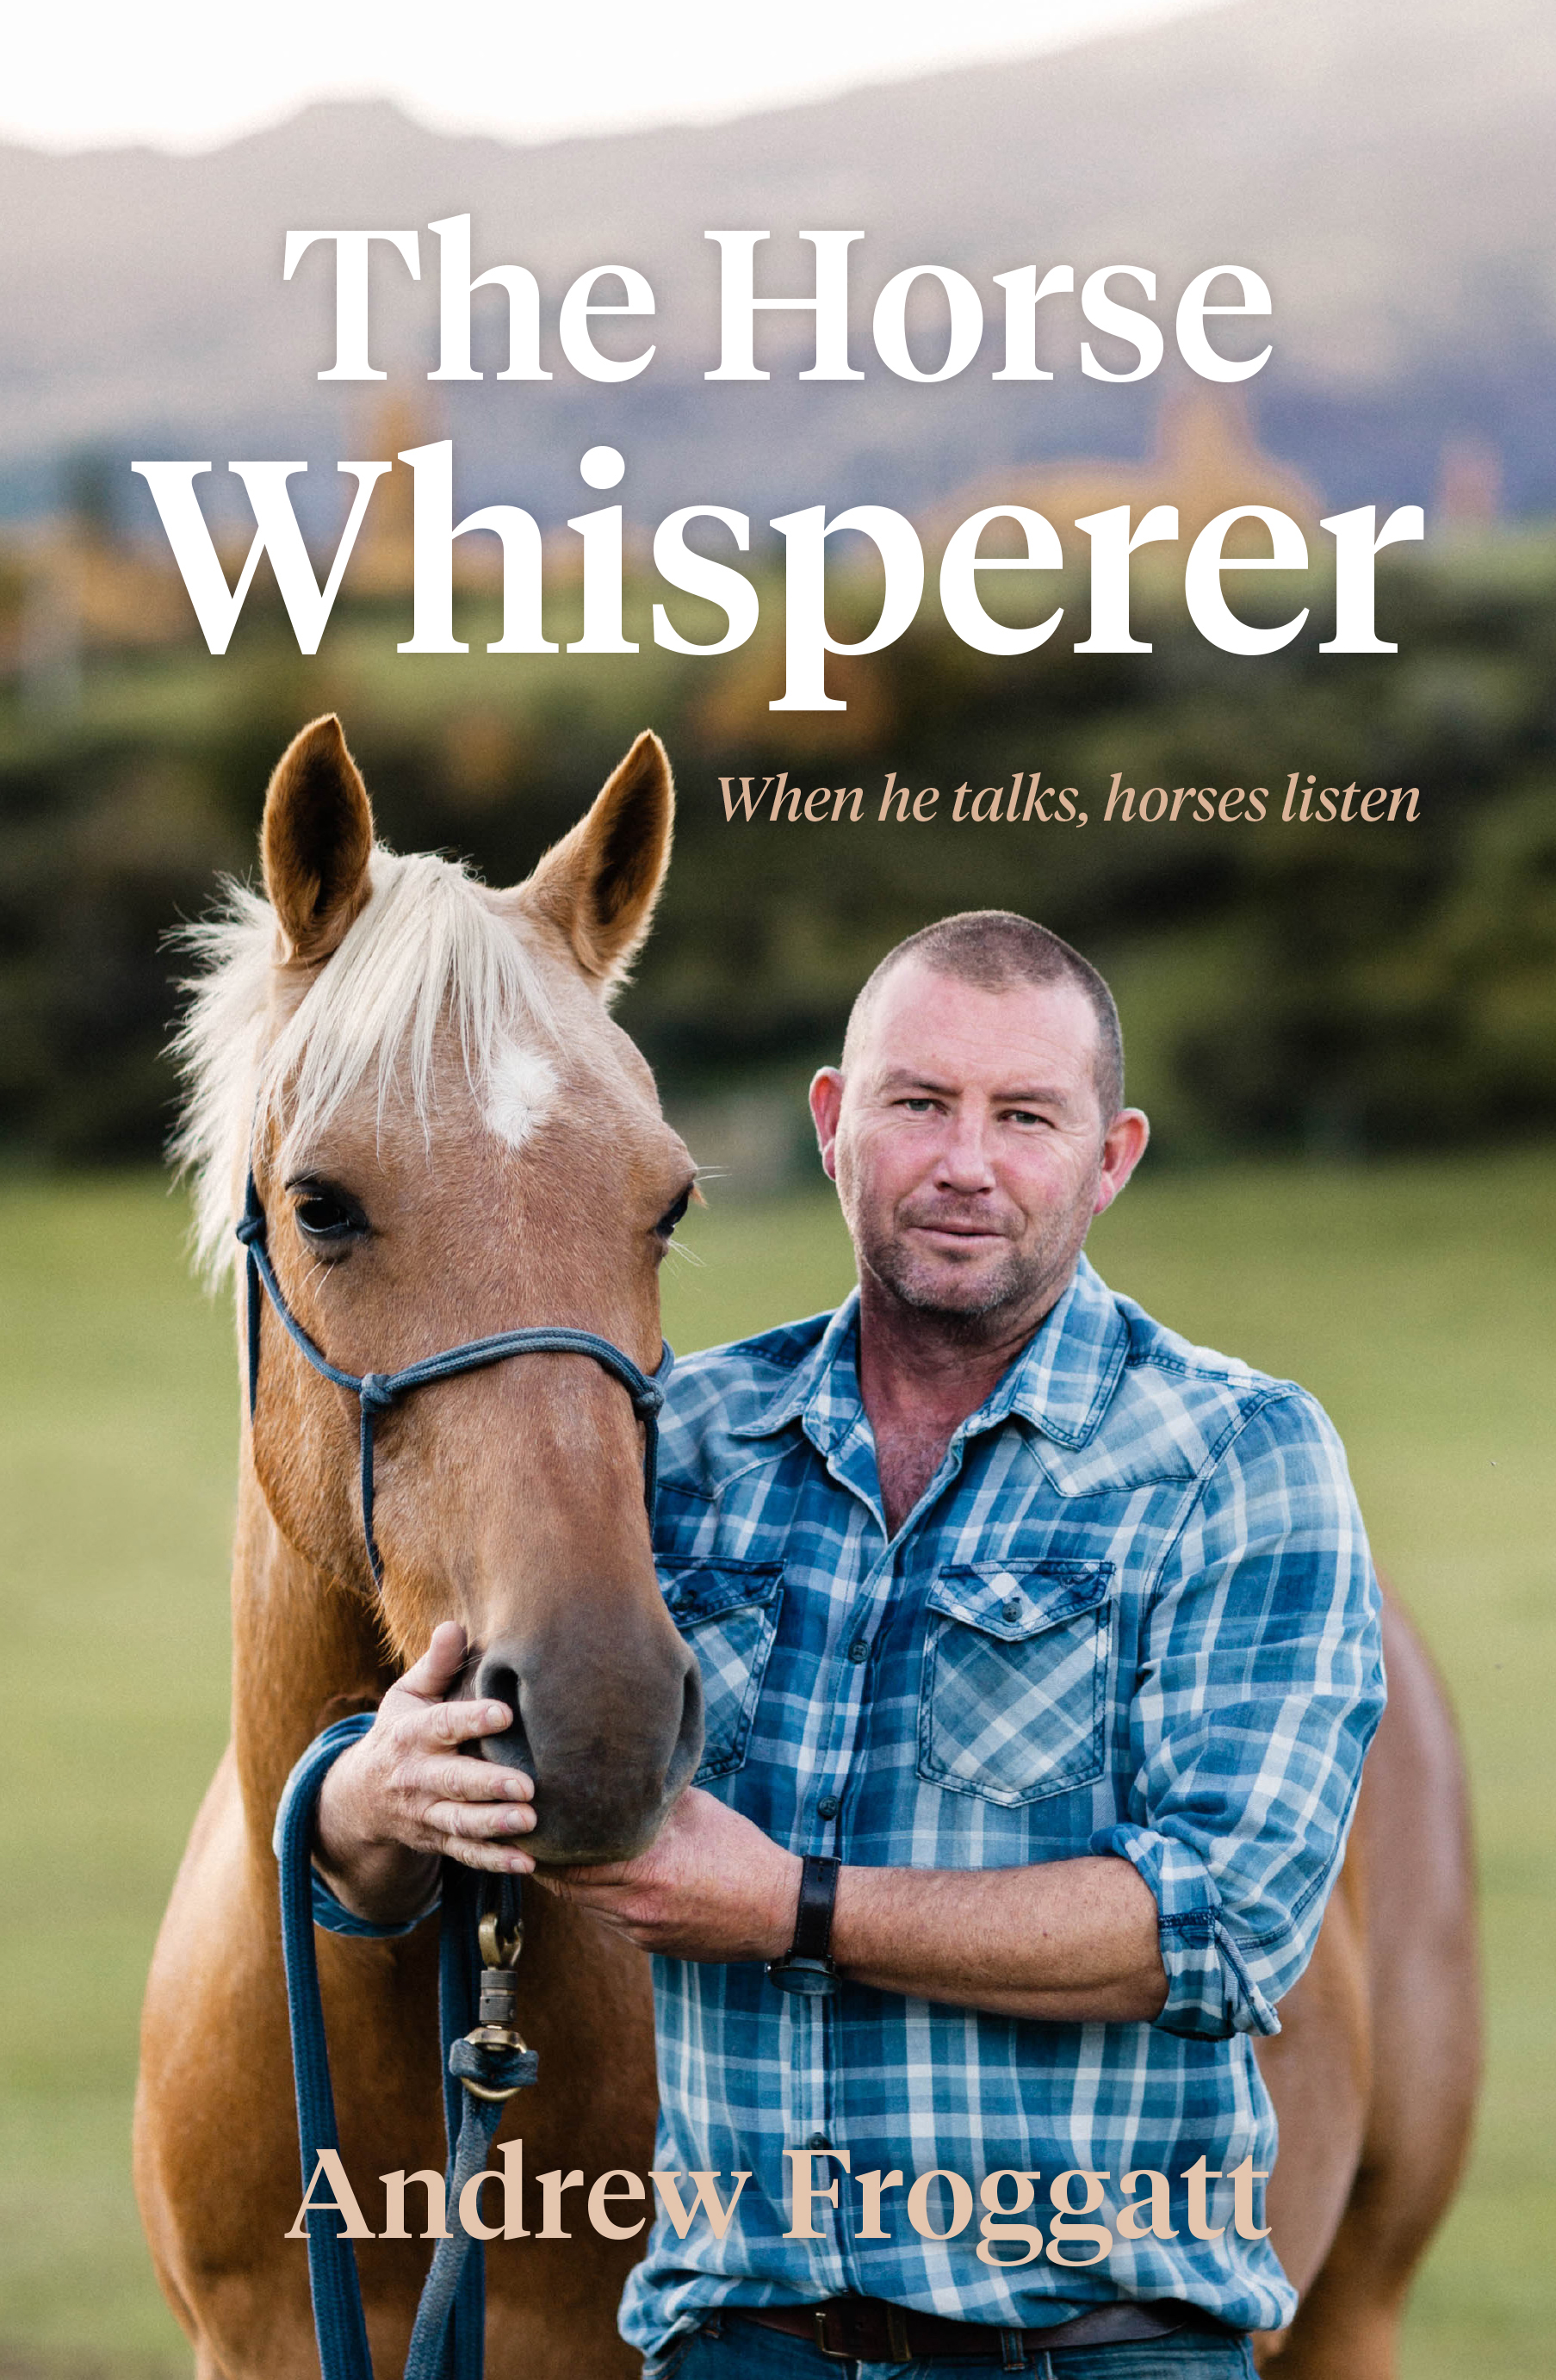 The Horse Whisperer - Andrew Froggatt - 9781877505676 - Allen ...